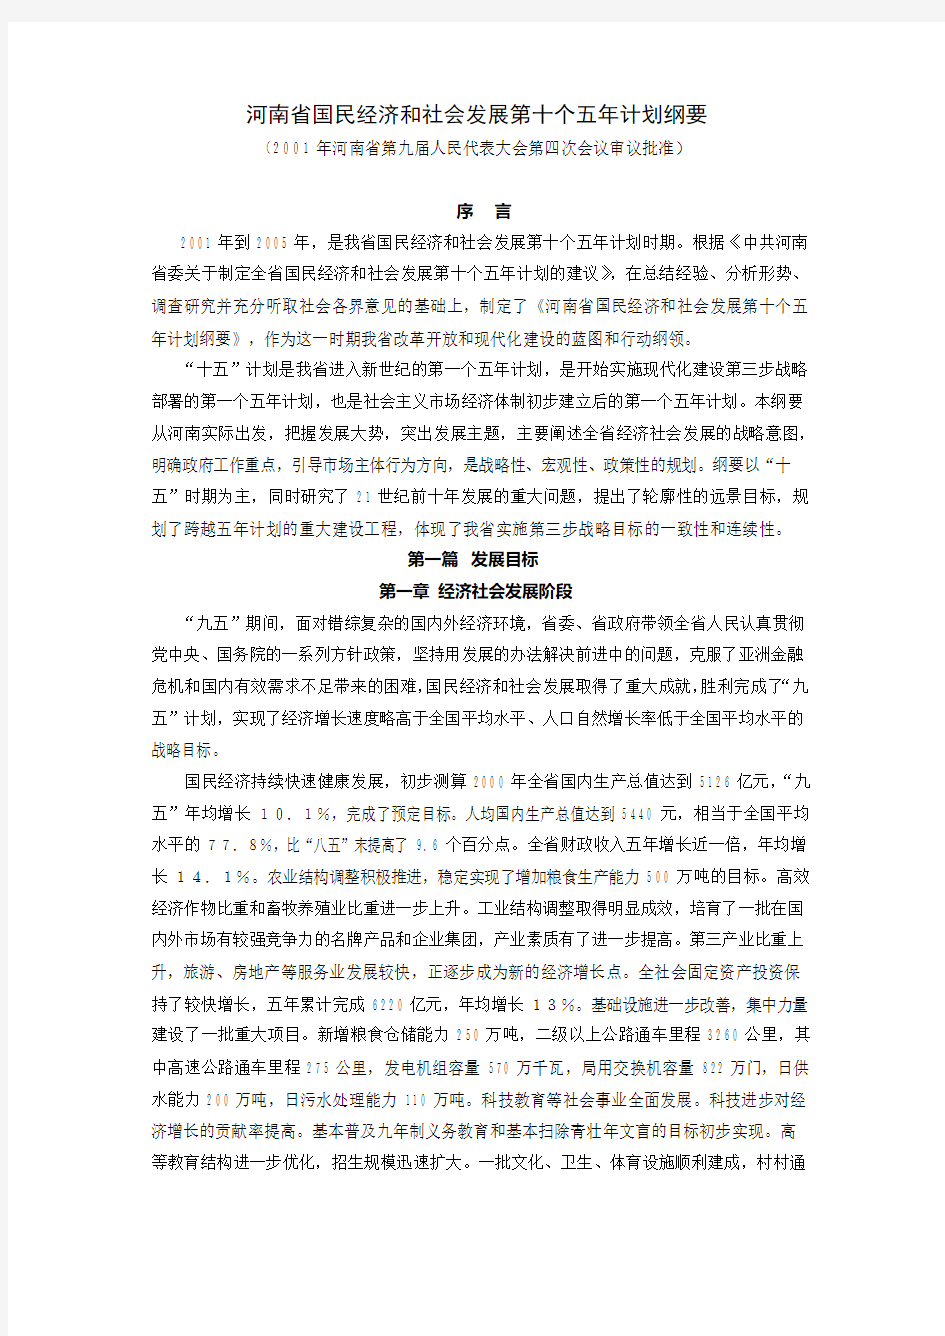 河南省国民经济和社会发展第十个五年计划纲要